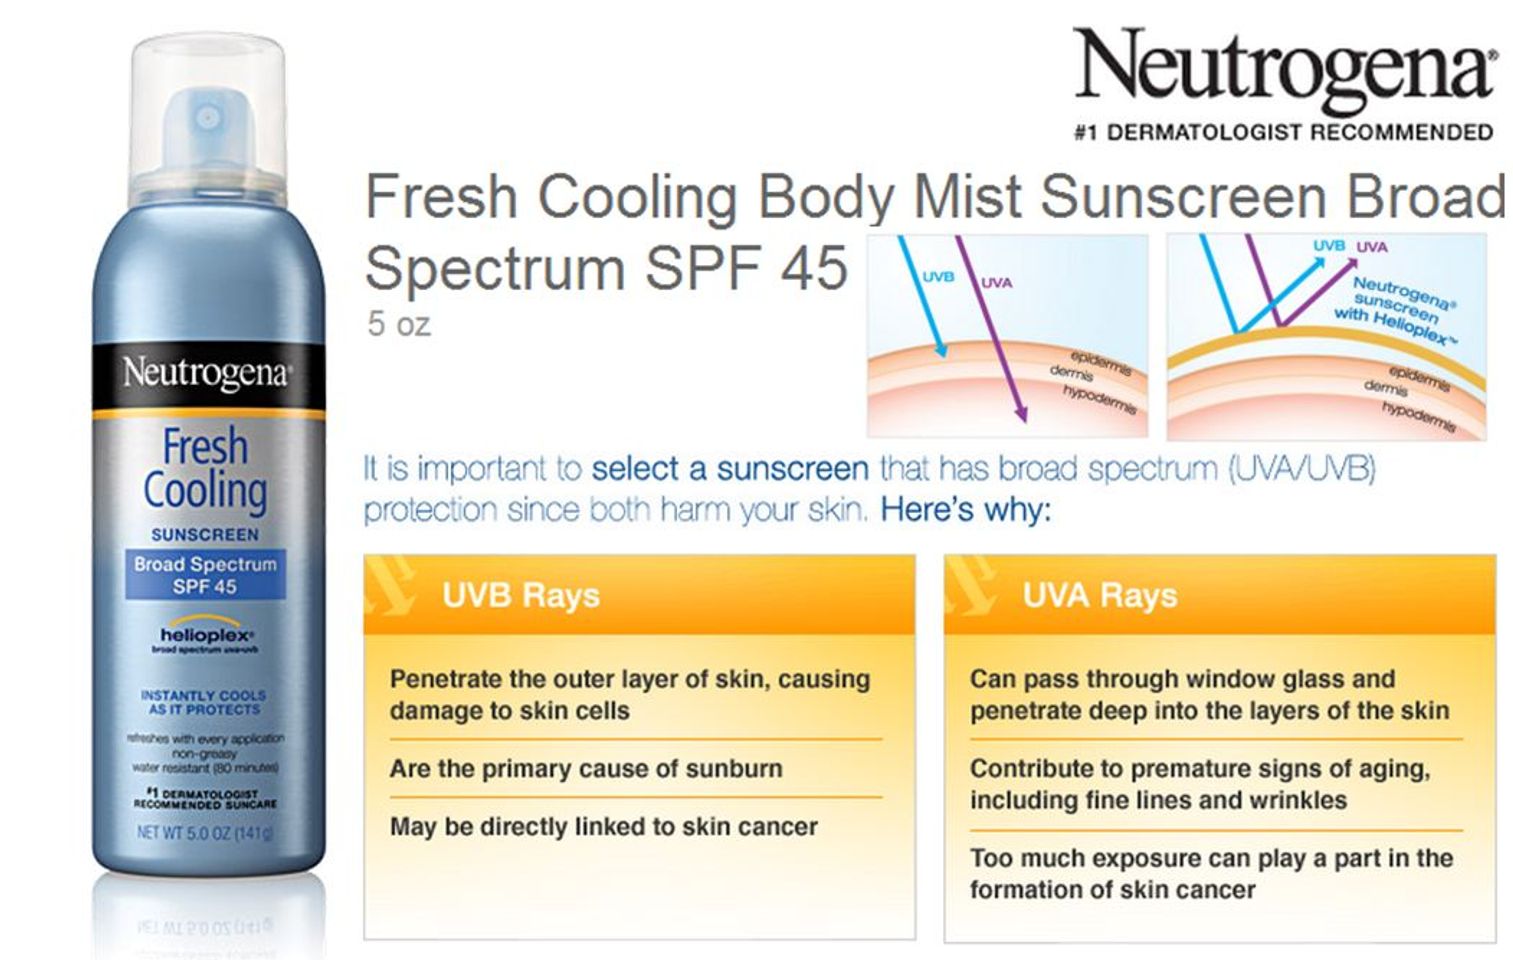 Xịt chống nắng Neutrogena fresh cooling SPF45 mang nhiều công dụng bảo vệ da vượt trội